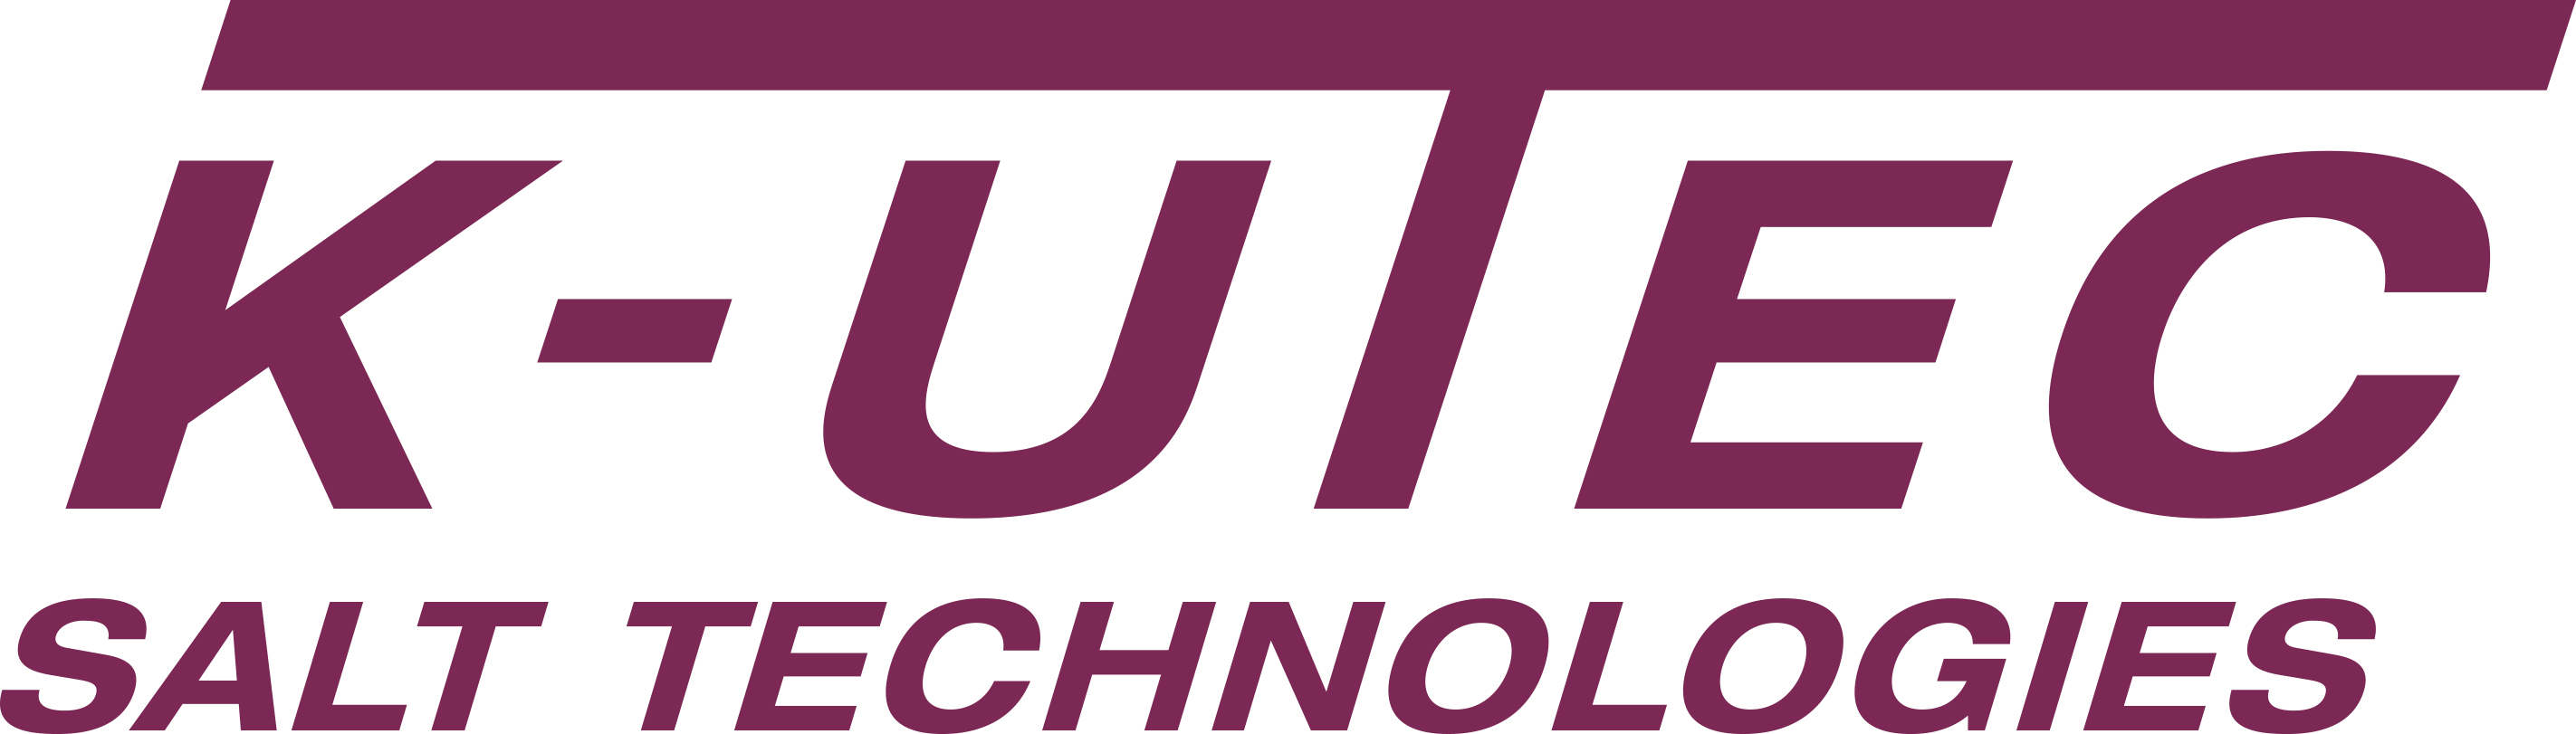 K-UTEC AG Salt Technologies